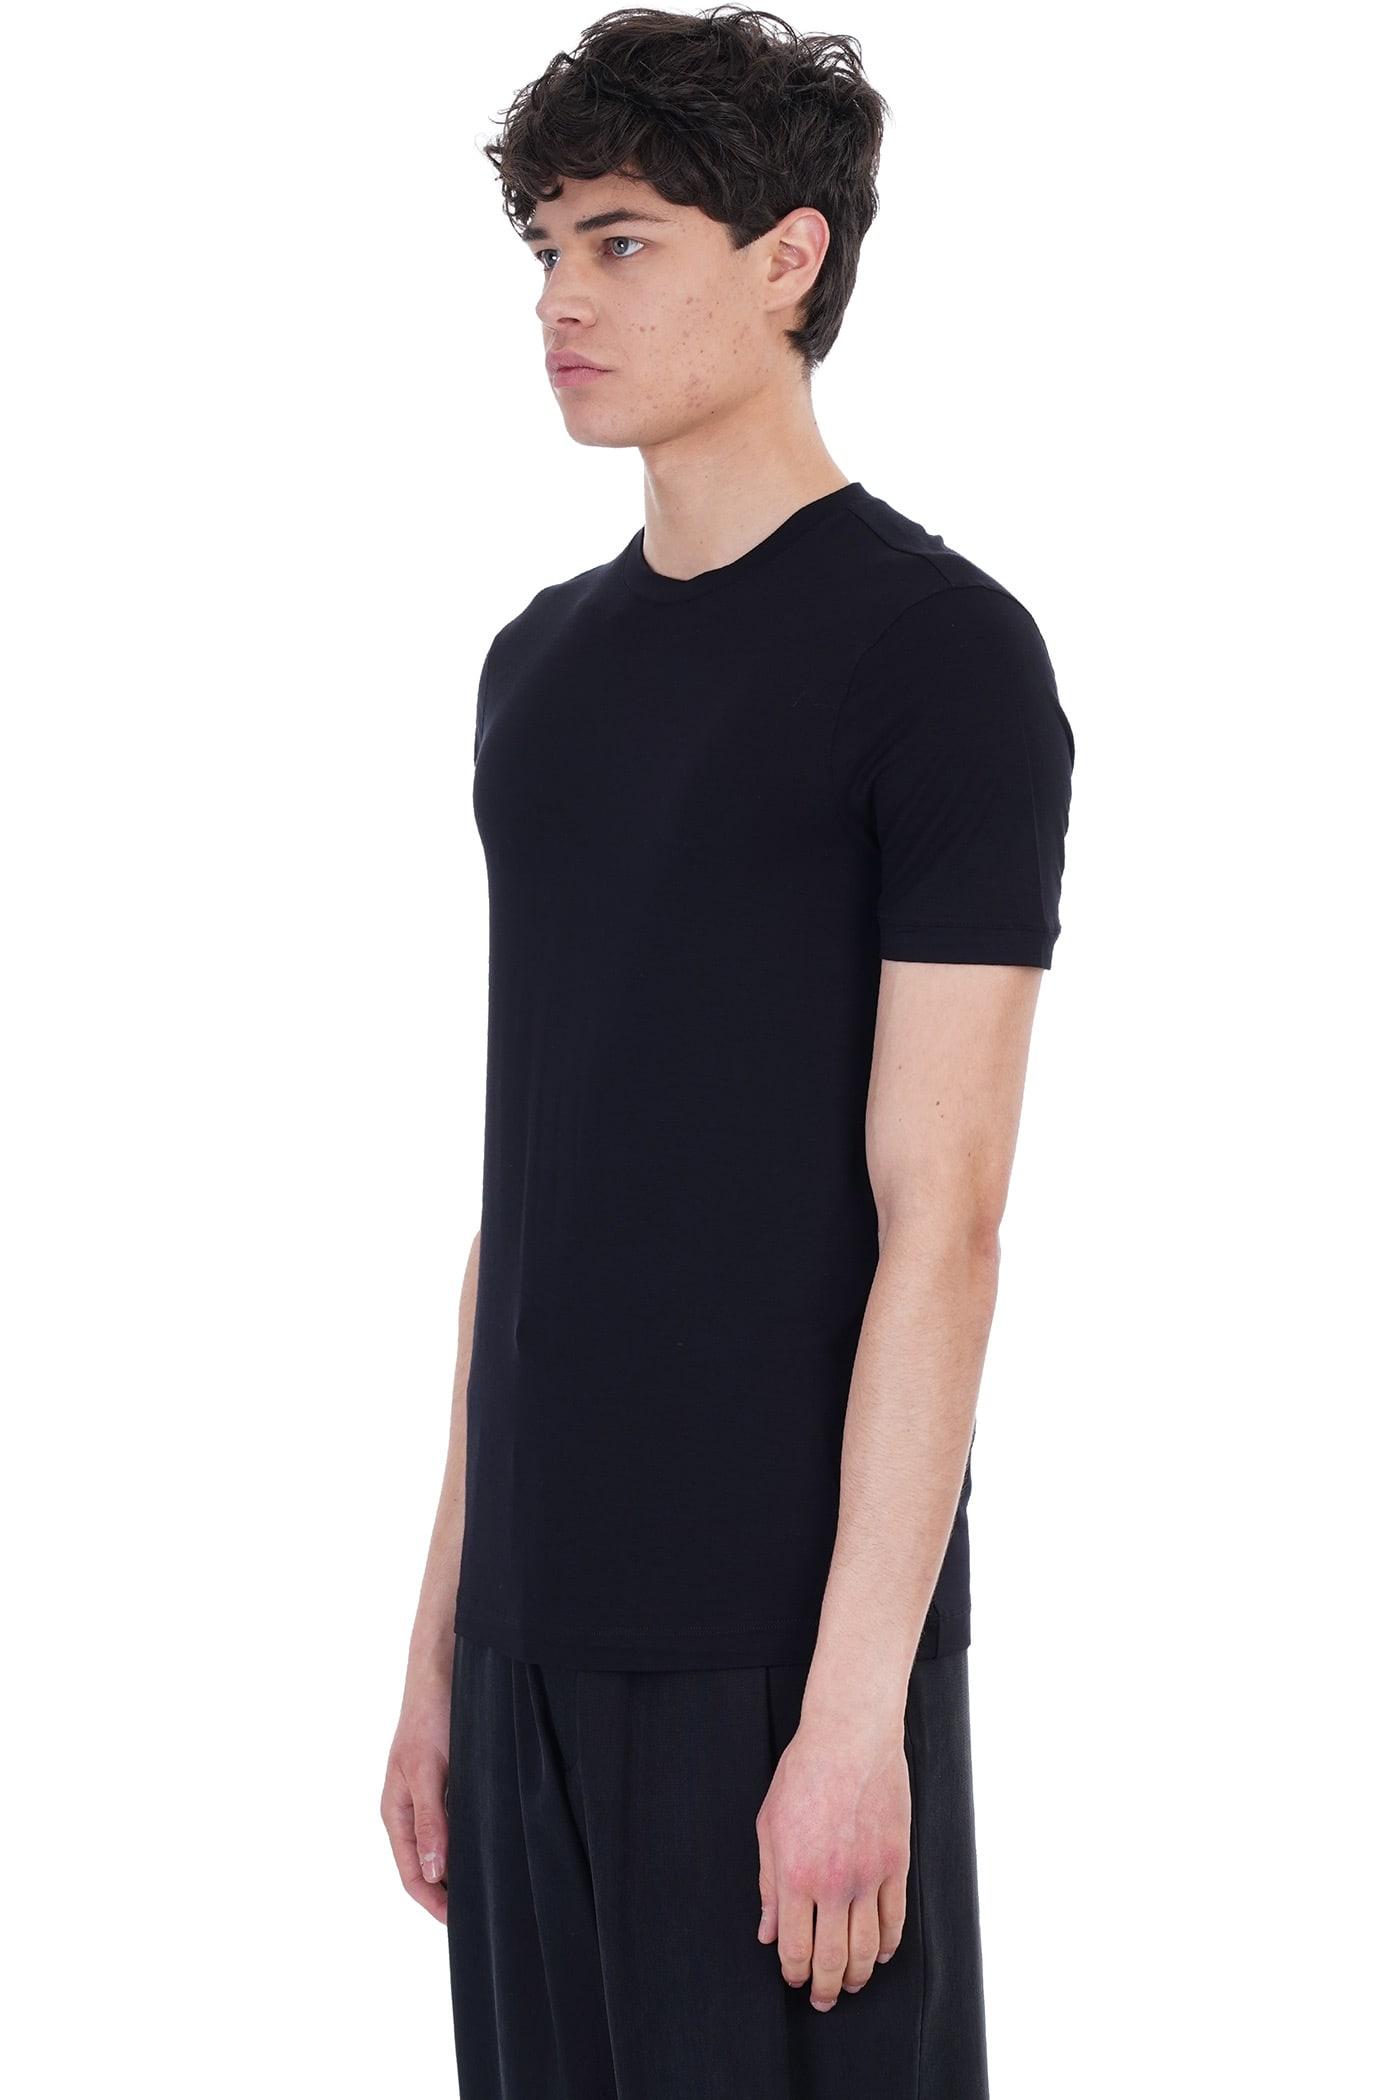 Giorgio Armani T-shirt In Black Viscose for Men | Lyst